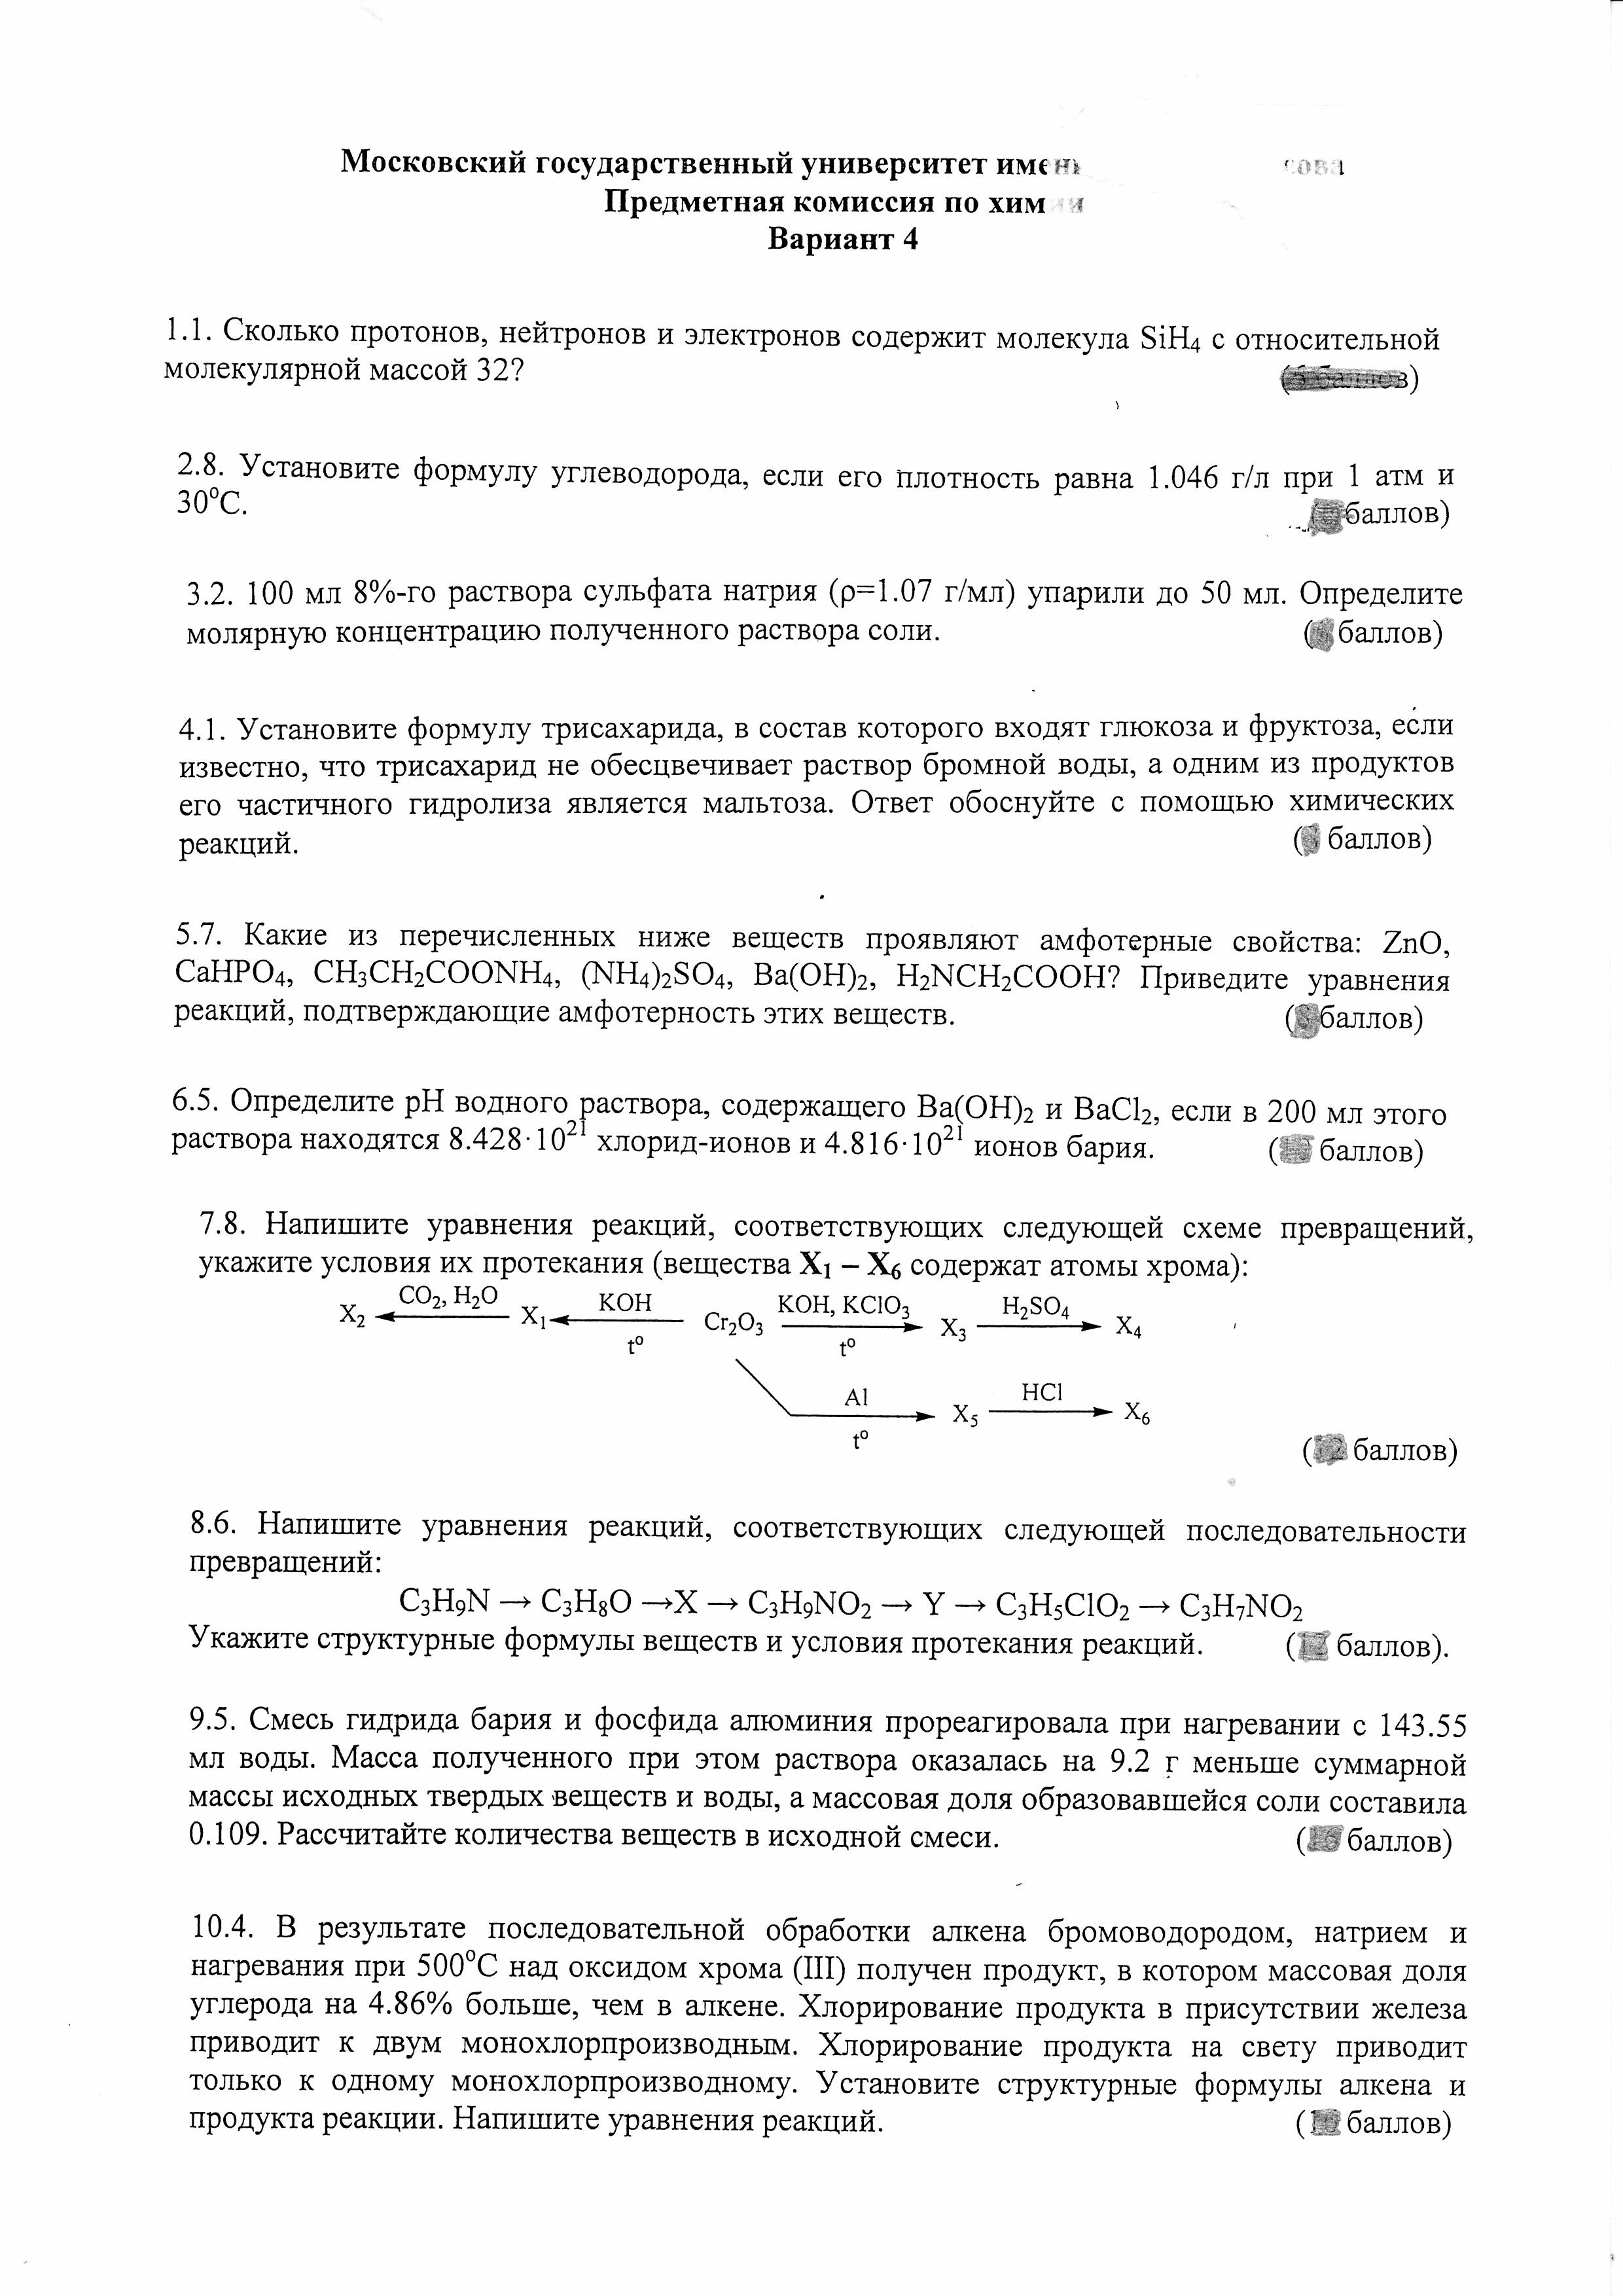 Шпаргалка: Программа вступительных экзаменов по русскому языку в 2004г. (МГУ)